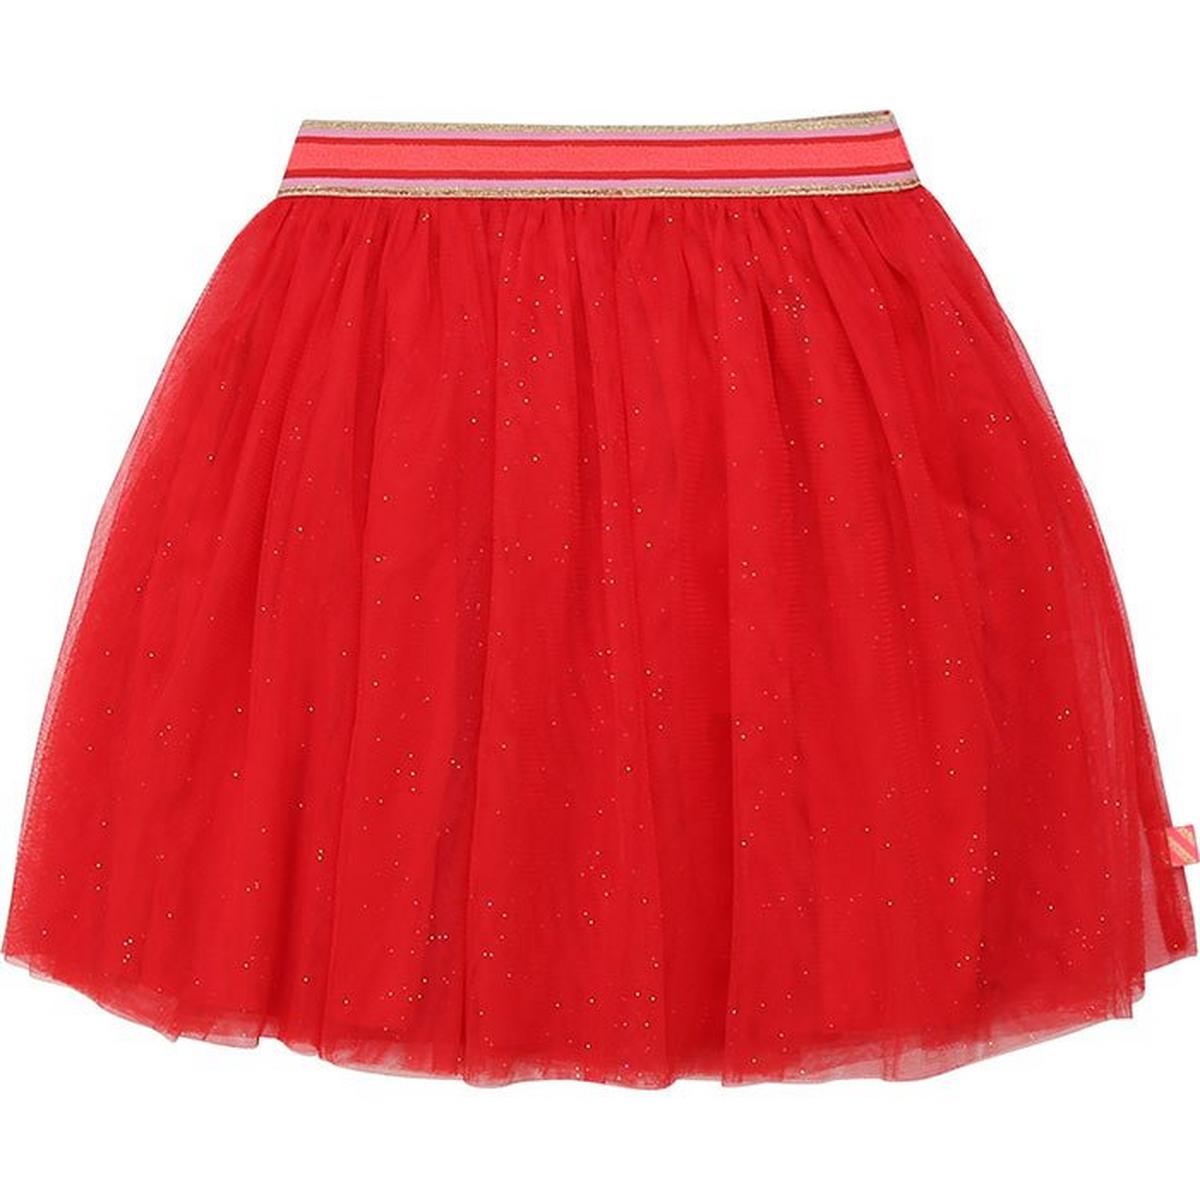 Girls' [3-6] Tulle Skirt